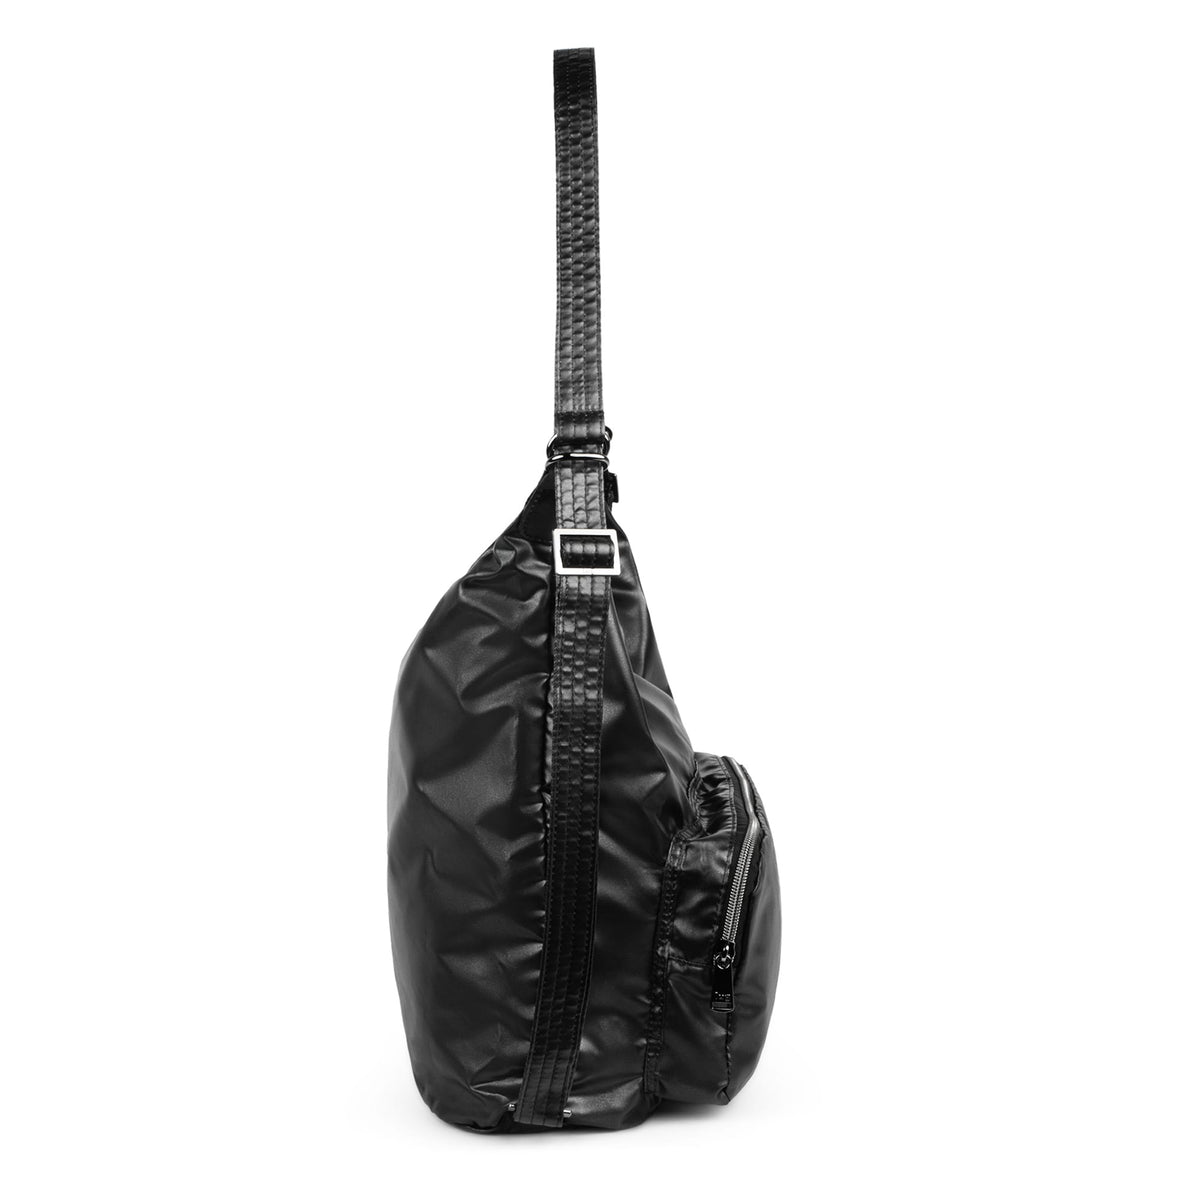 Zipliner Packable Convertible Hobo Bag